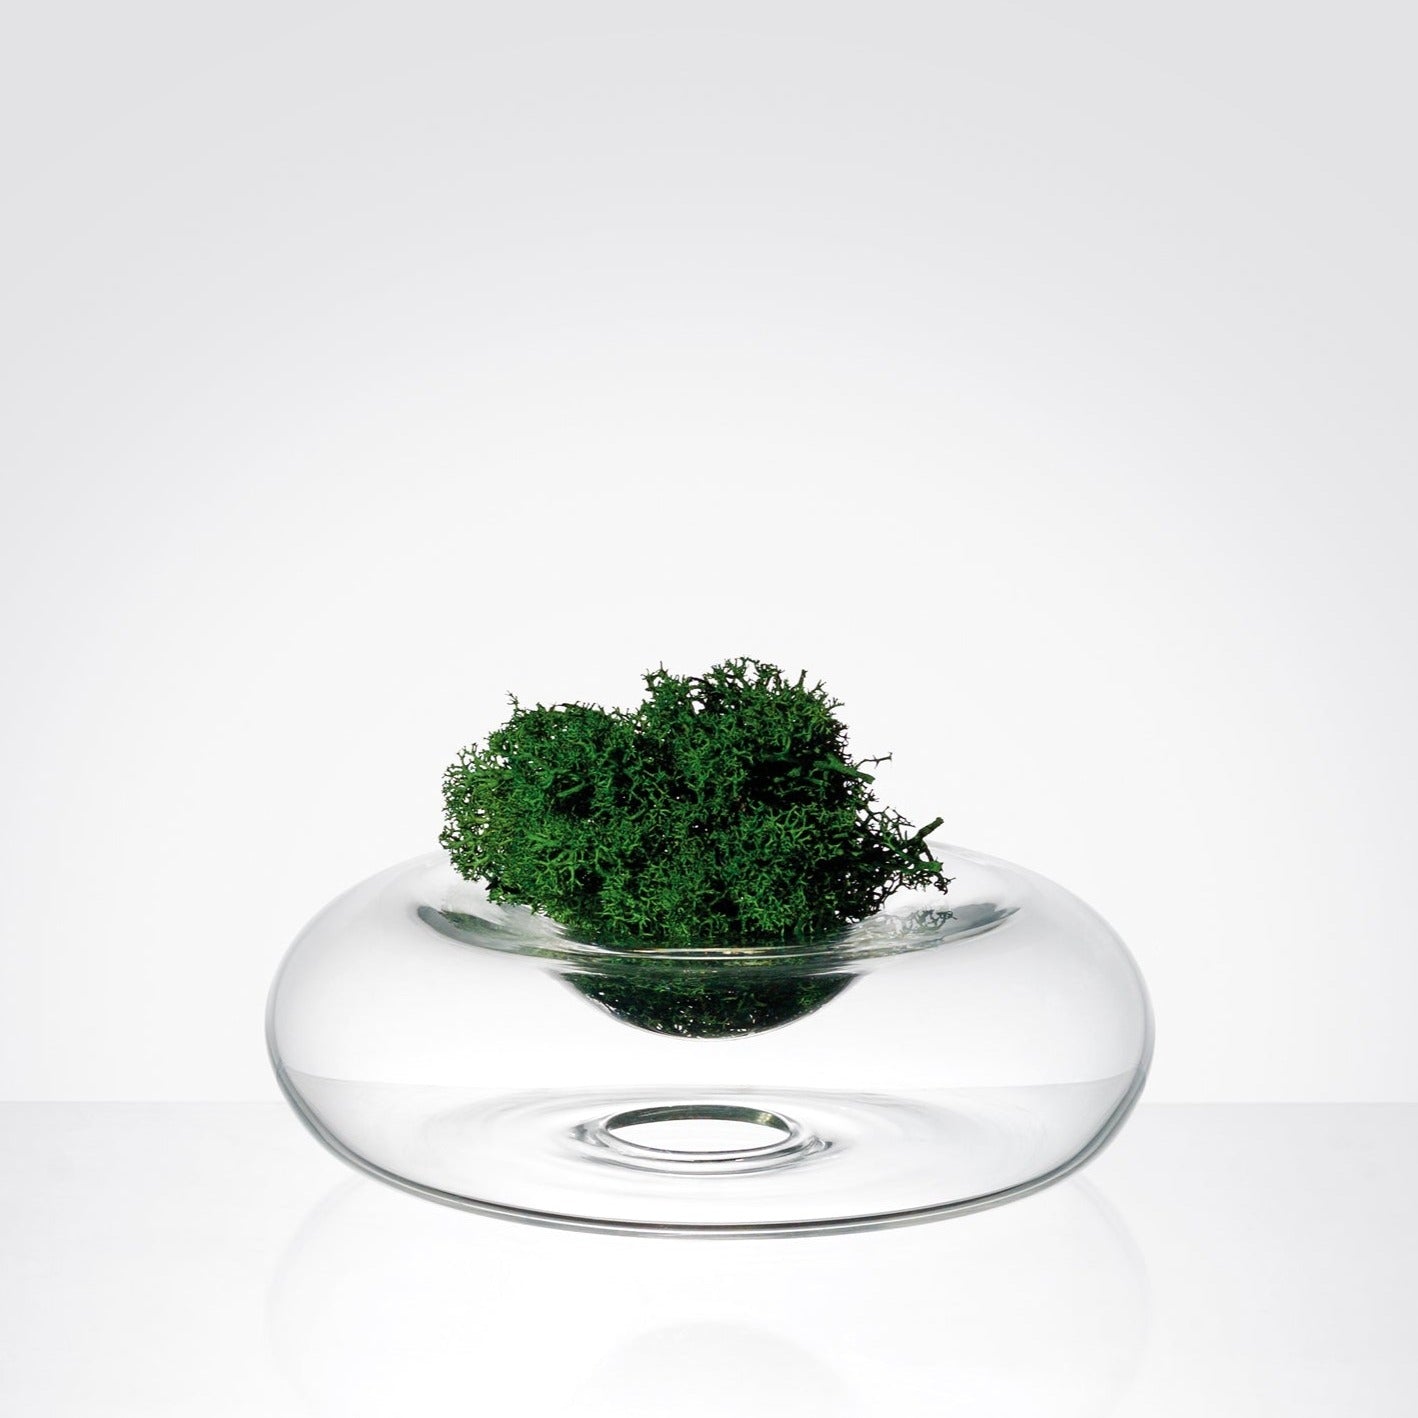 Cino, low glass vase for short stem flower